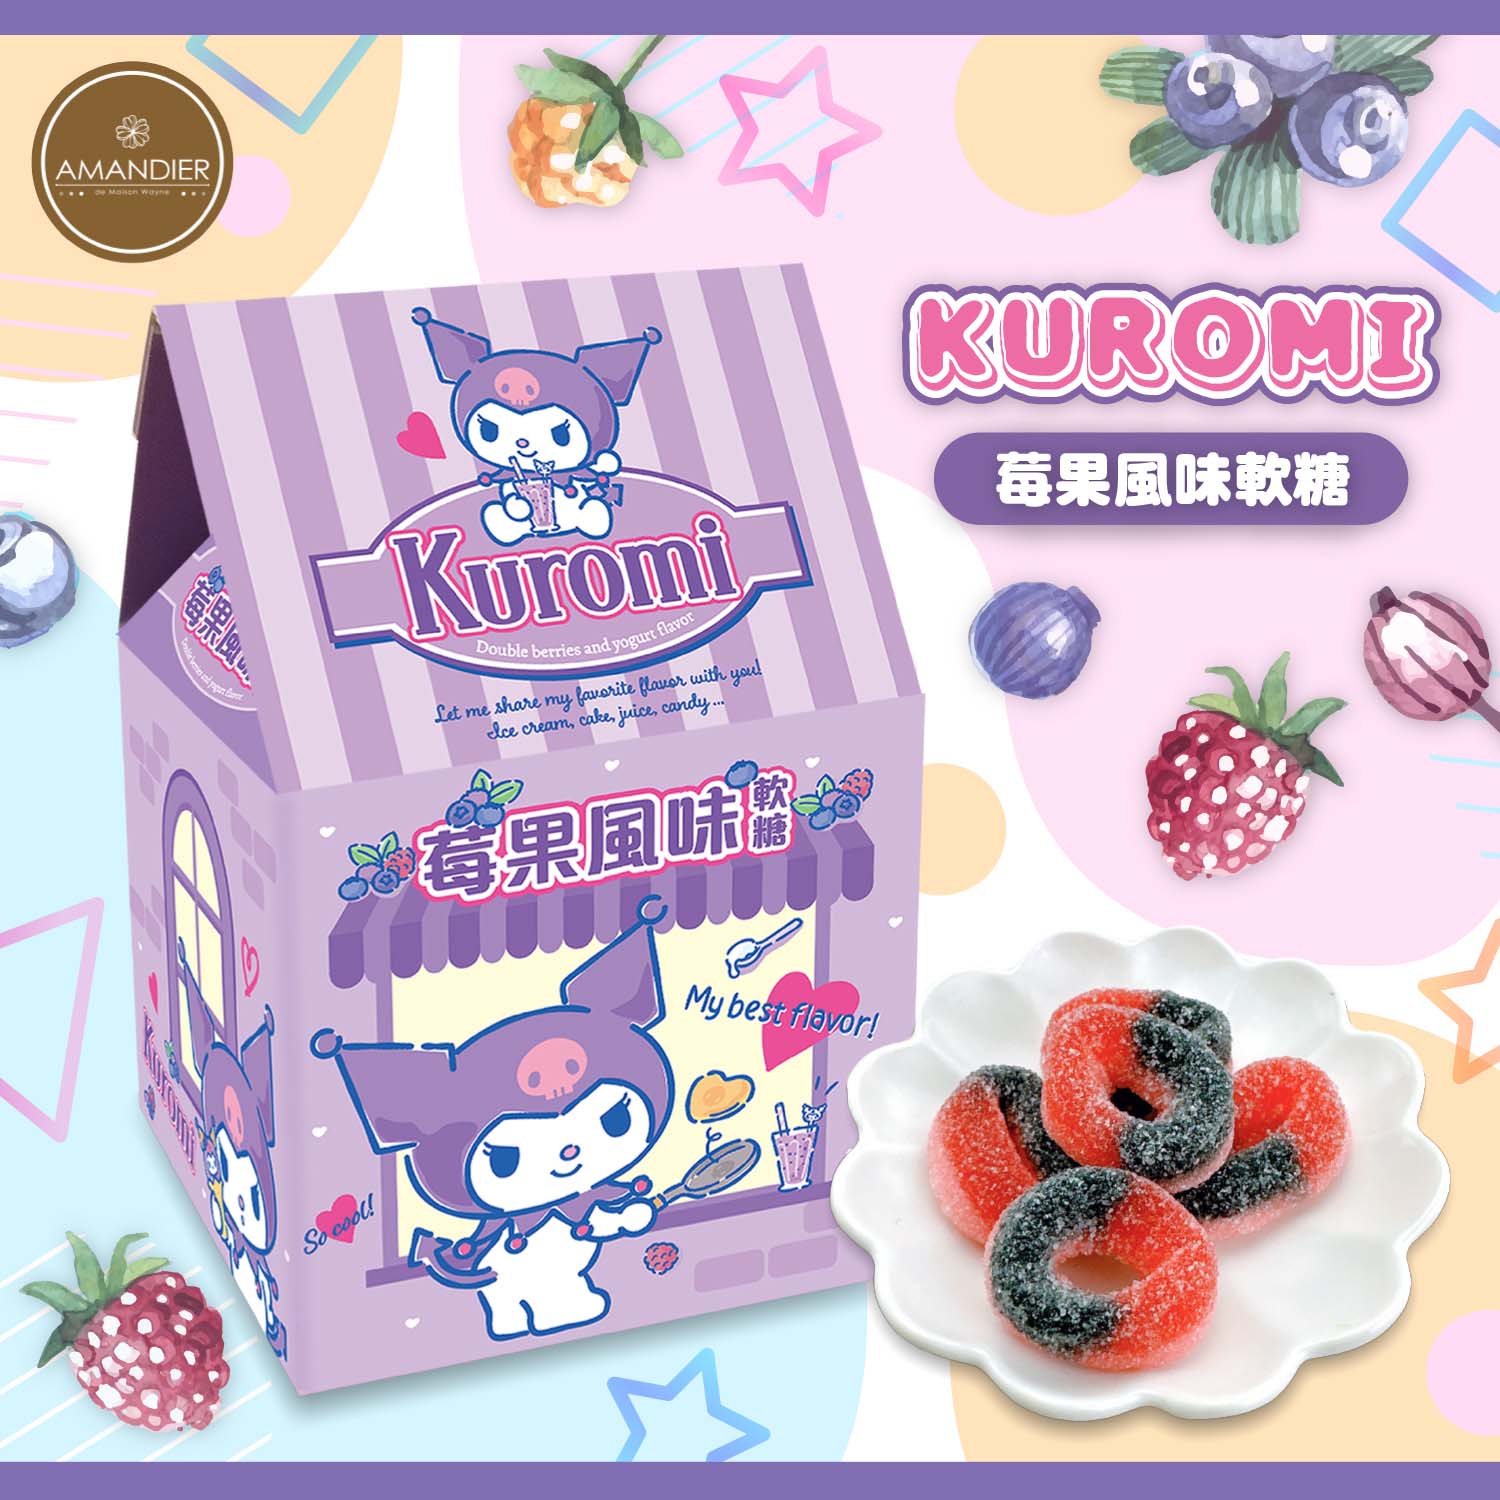 【雅蒙蒂】酷洛米Kuromi莓果風味軟糖